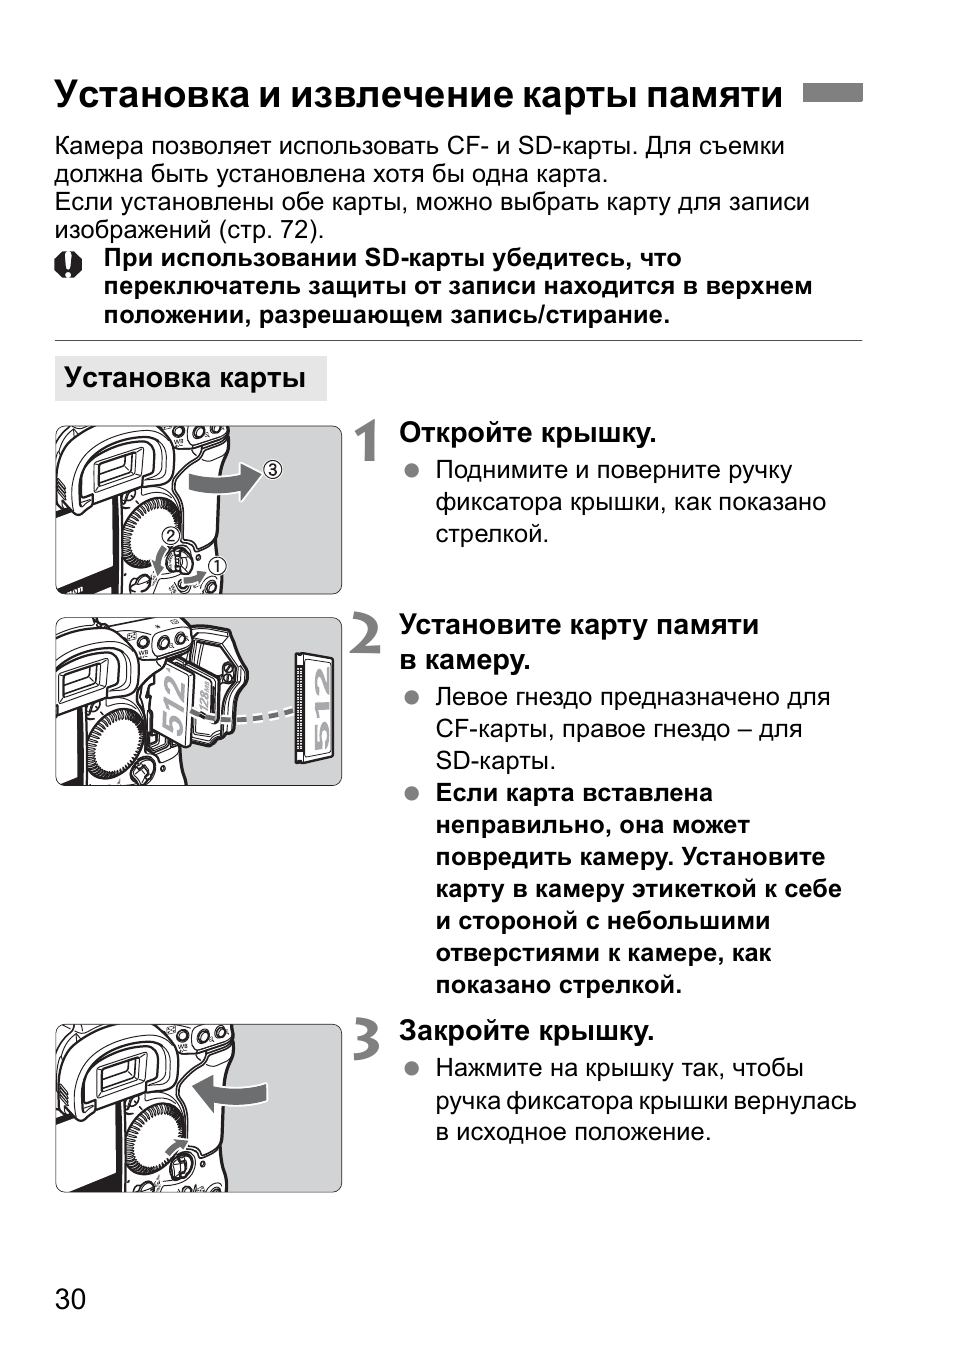 Установка и извлечение карты памяти | Инструкция по эксплуатации Canon EOS 1D Mark II N | Страница 30 / 196